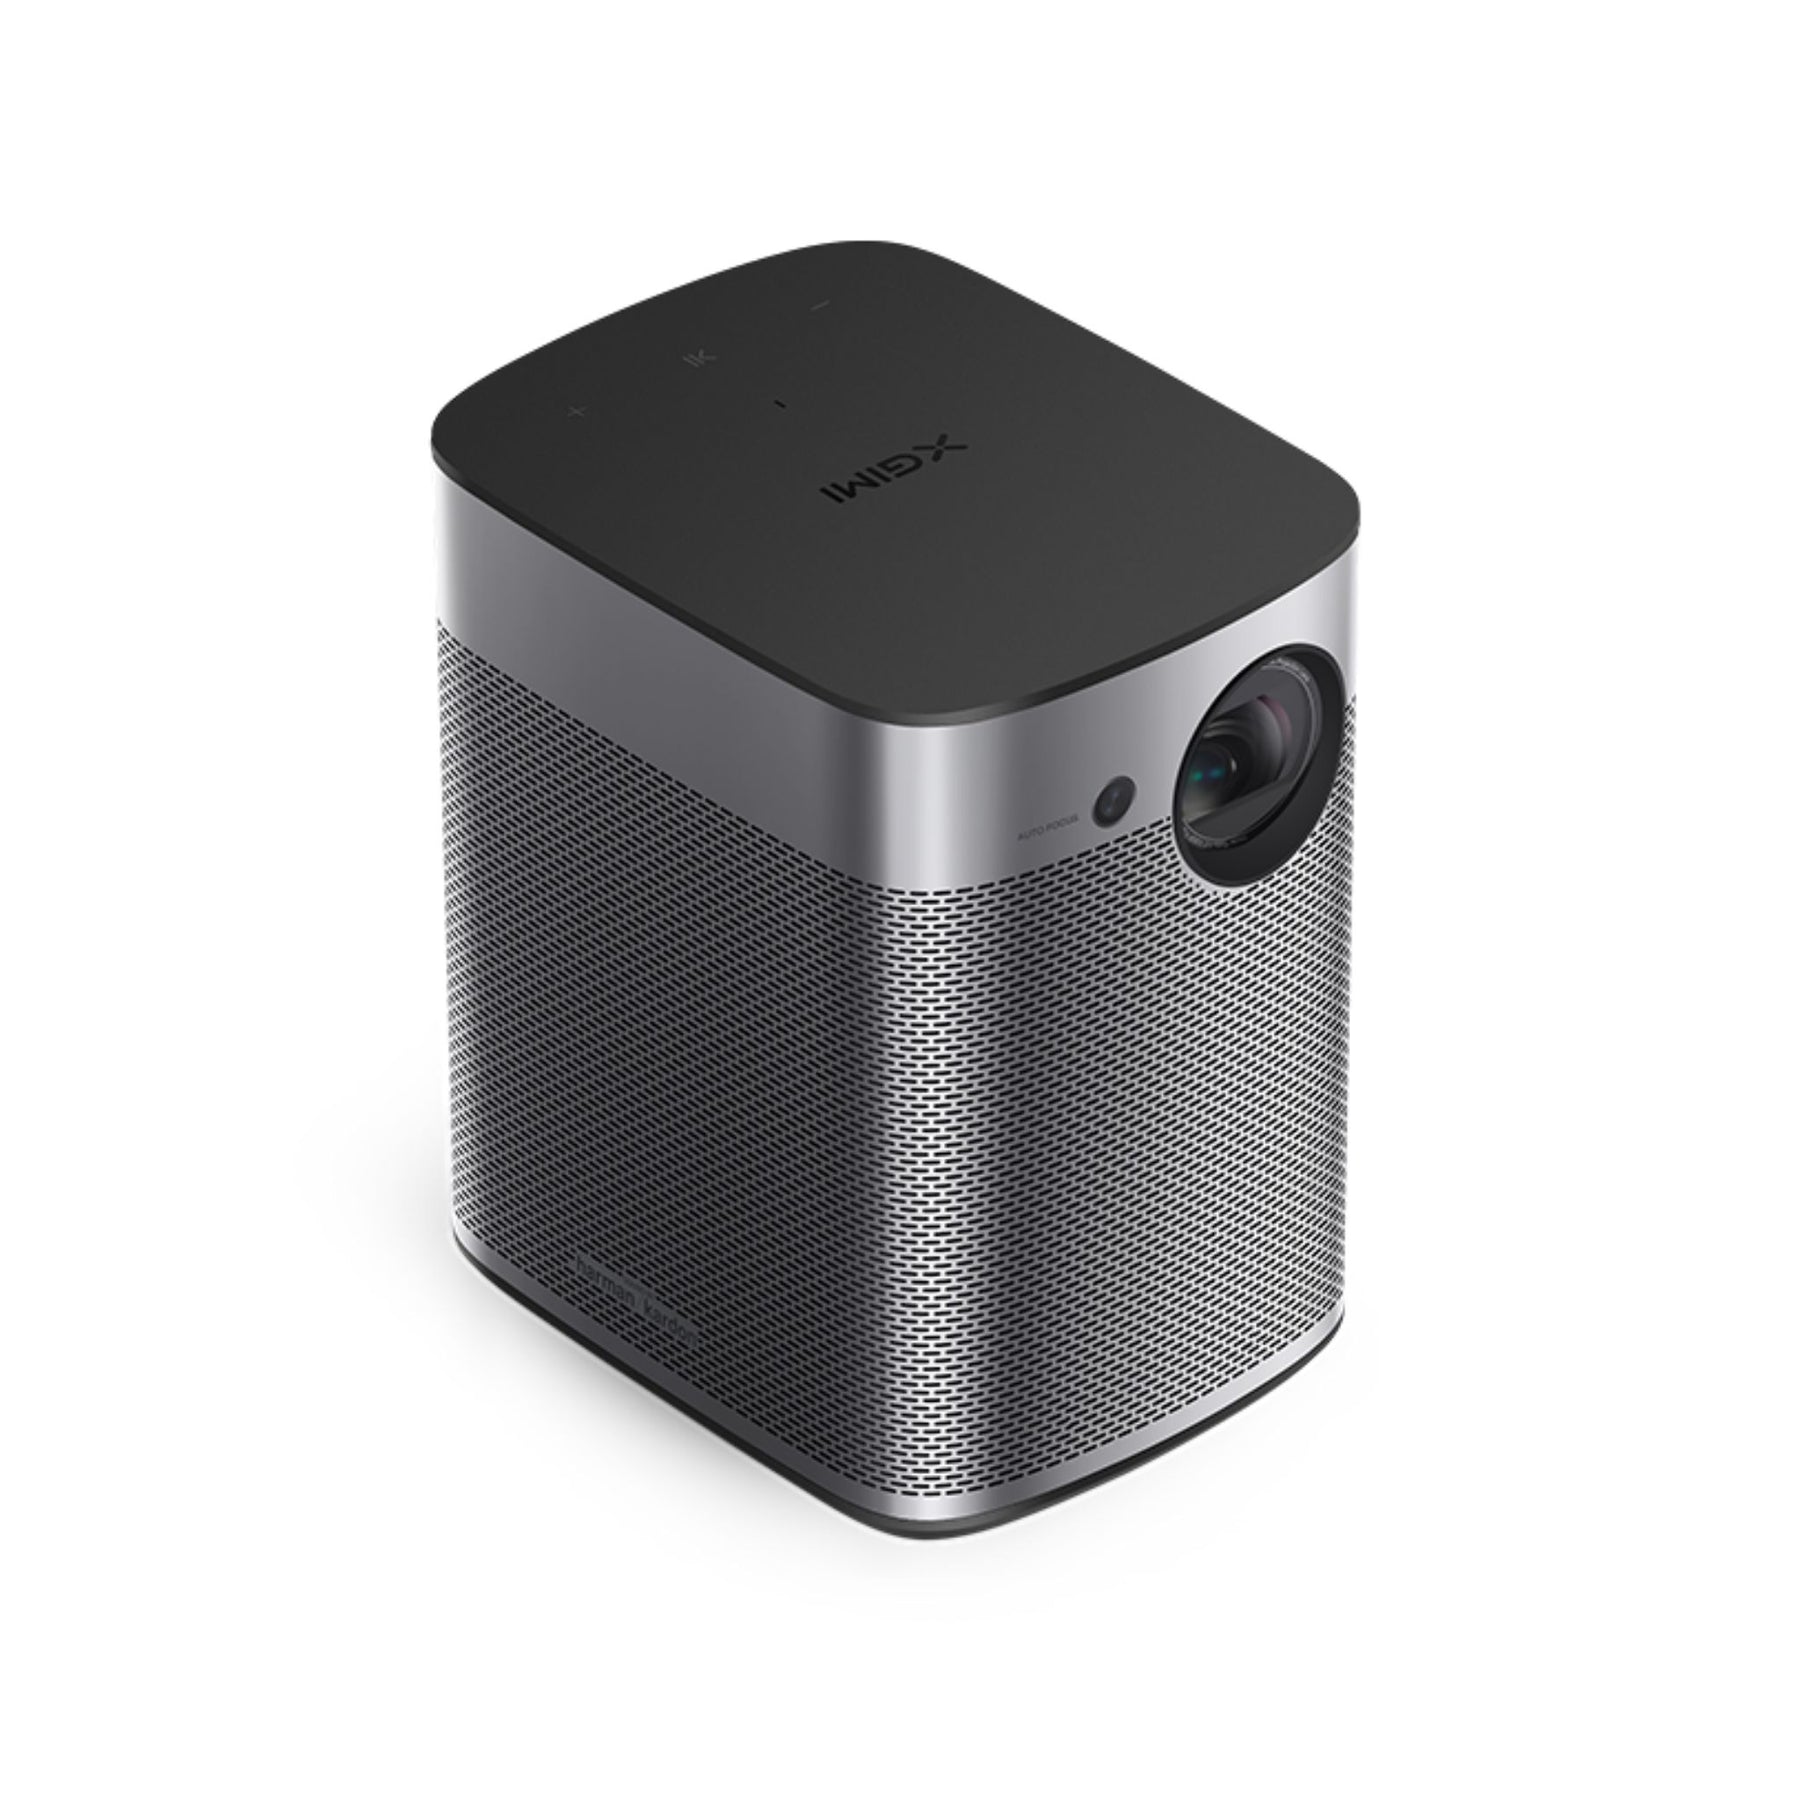 Halo Portable Projector Smart | XGIMI - AVStore